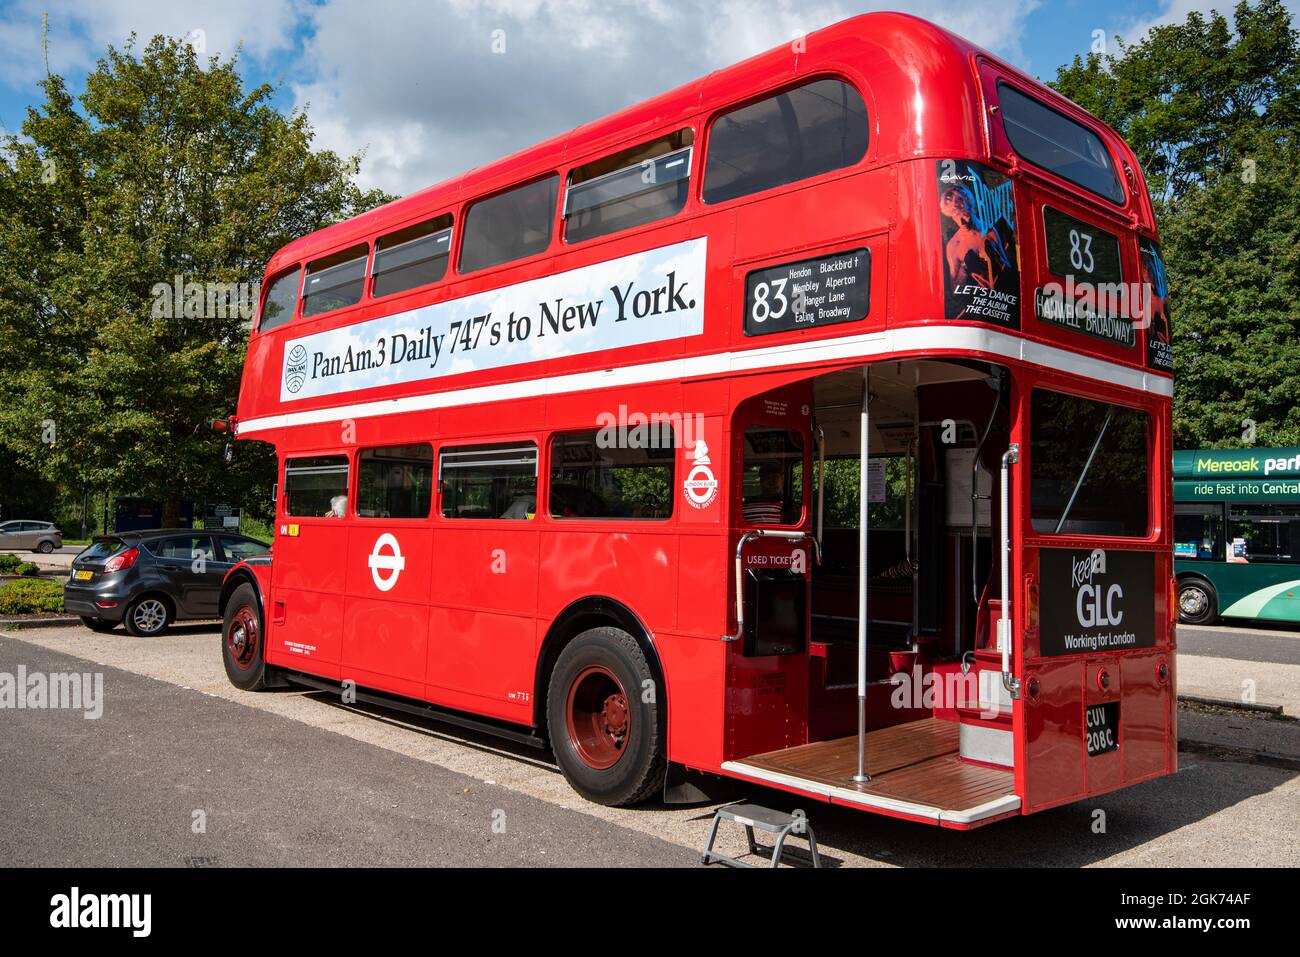 Ein klassischer roter Londoner Doppeldeckerbus mit einer Vintage-Anzeige für Pan am-Flüge nach New York auf der Seite 747s, Winchester, Großbritannien Stockfoto